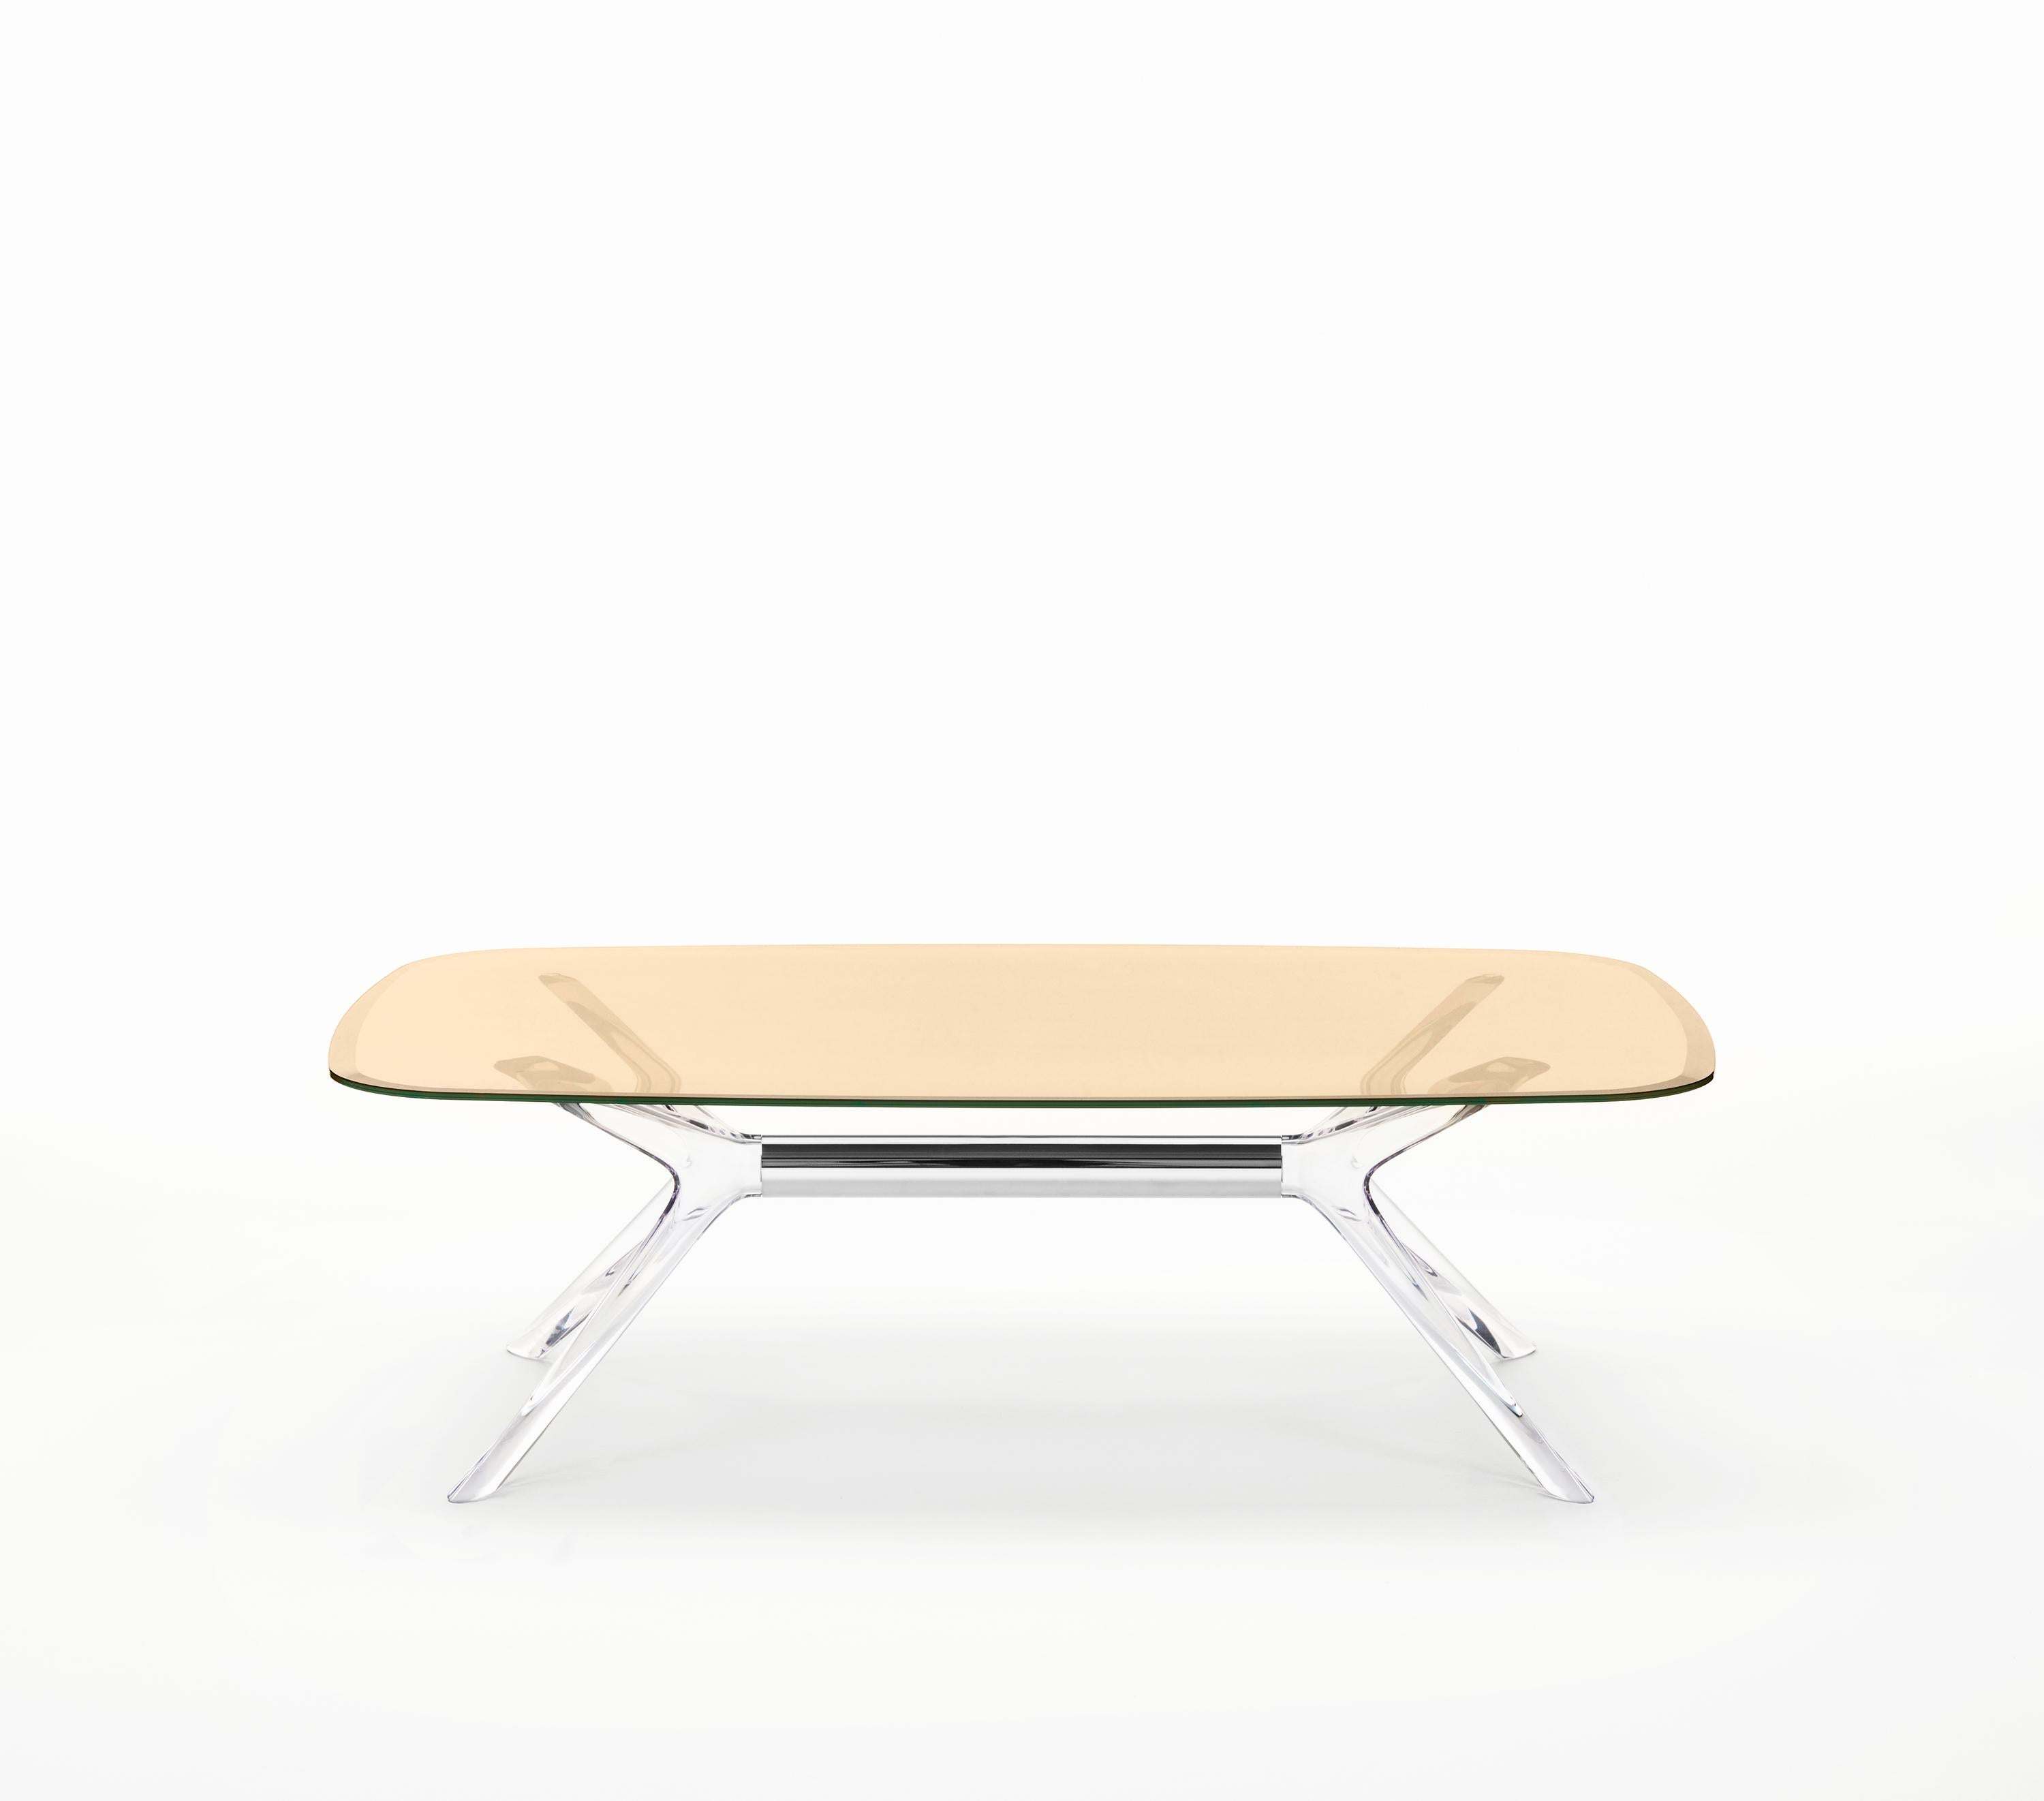 Kartell lifestyle agrémente le salon avec Blast de Philippe Starck, une table basse rectangulaire aux angles arrondis et aux bases et plateaux transparents. Le design est un développement de la table Sir Gio. Le noyau central de la base est